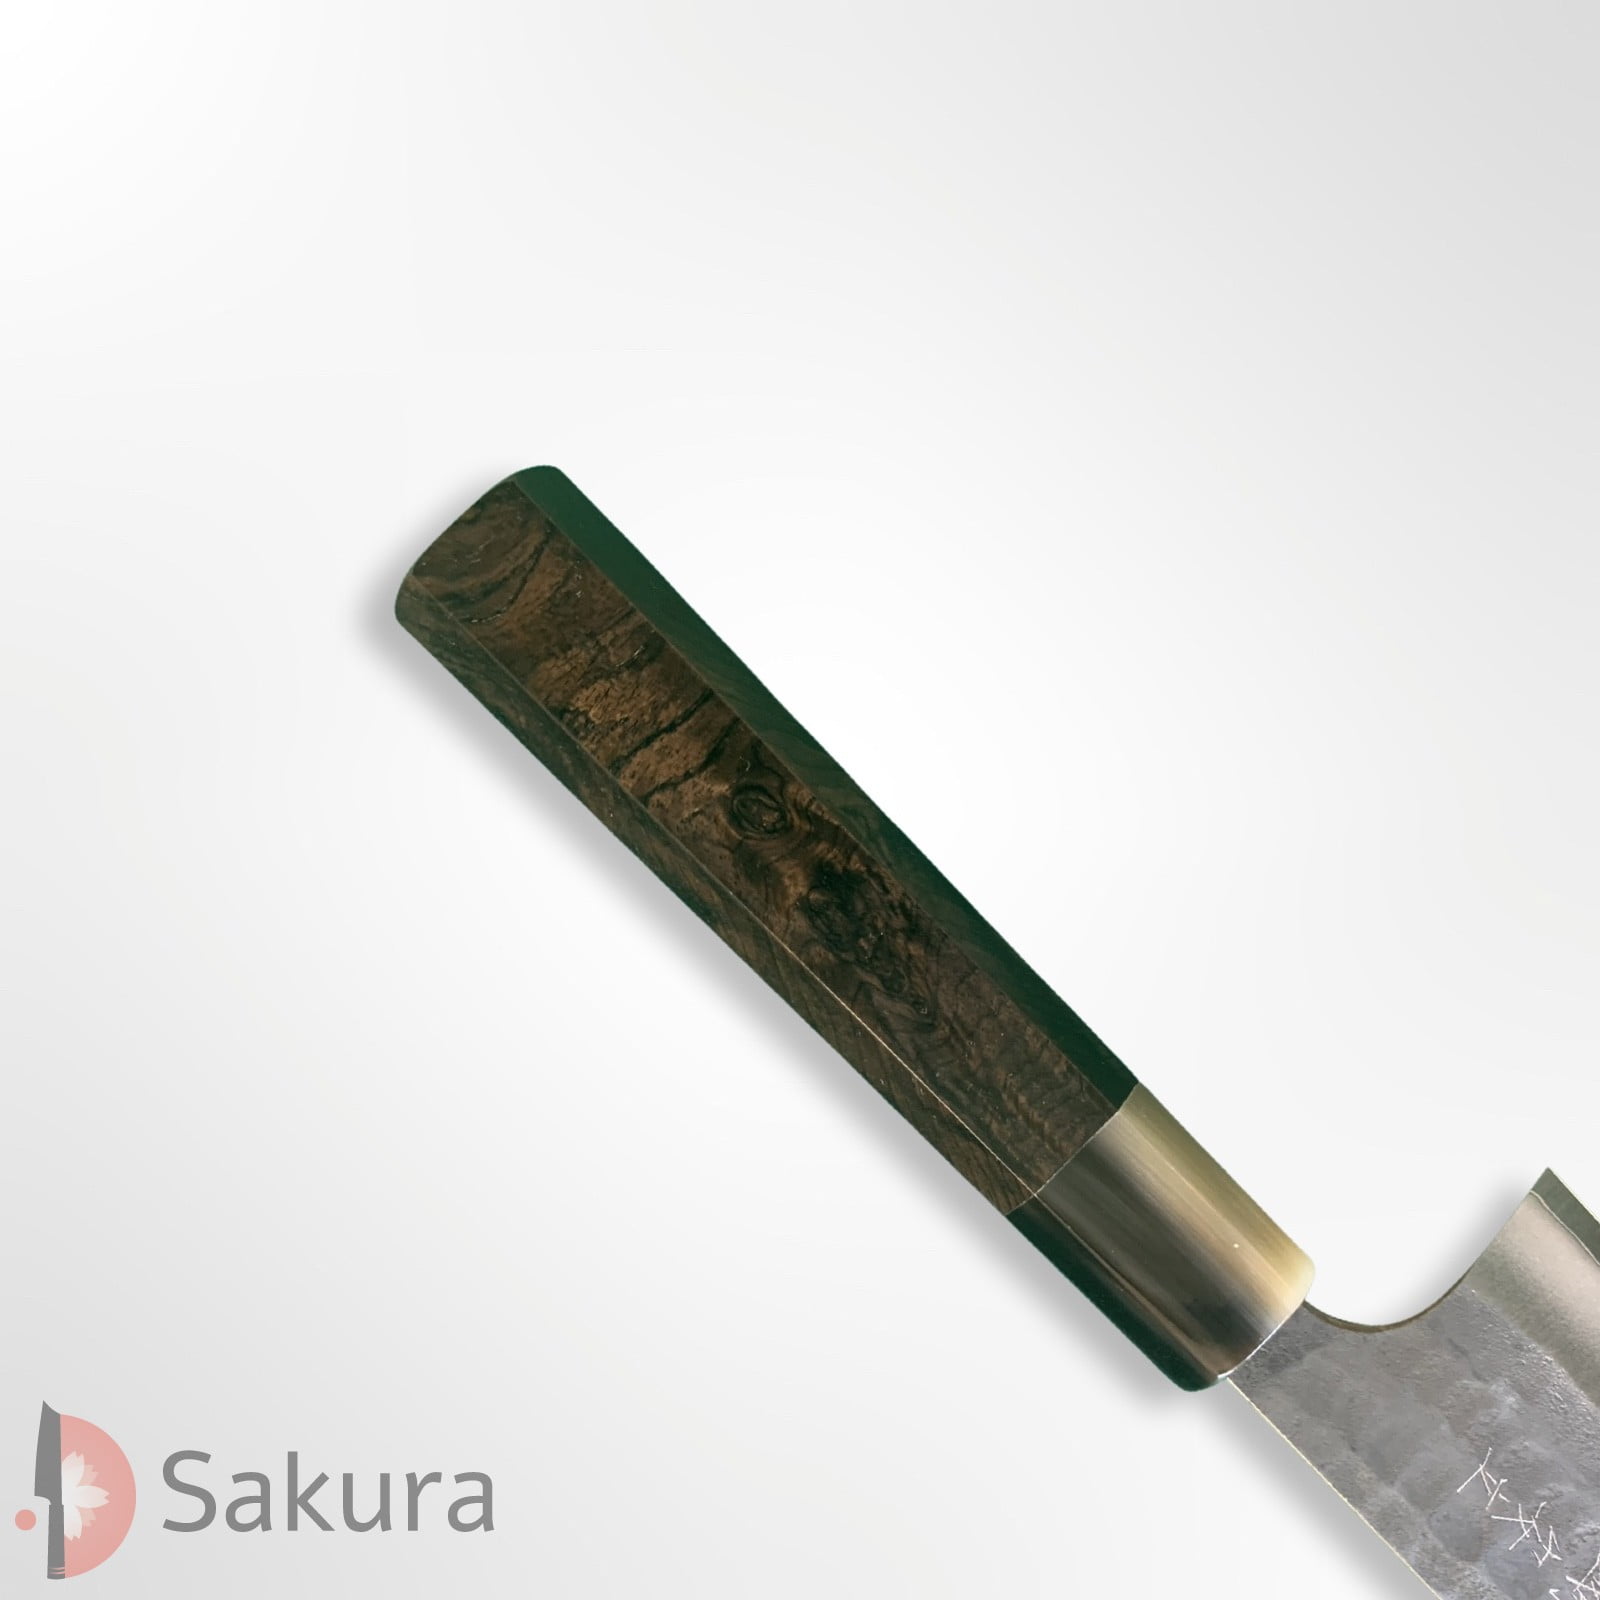 סכין רב-תכליתית סָנטוֹקוּ 165מ״מ מחושלת בעבודת יד 3 שכבות: פלדת פחמן יפנית מתקדמת מסוג Aogami Super עטופה פלדת אל-חלד גימור קורואוצ׳י שחור עם ריקוע פטיש קטסושיקה אנריו יפן – SKANRYASKTSANT16523